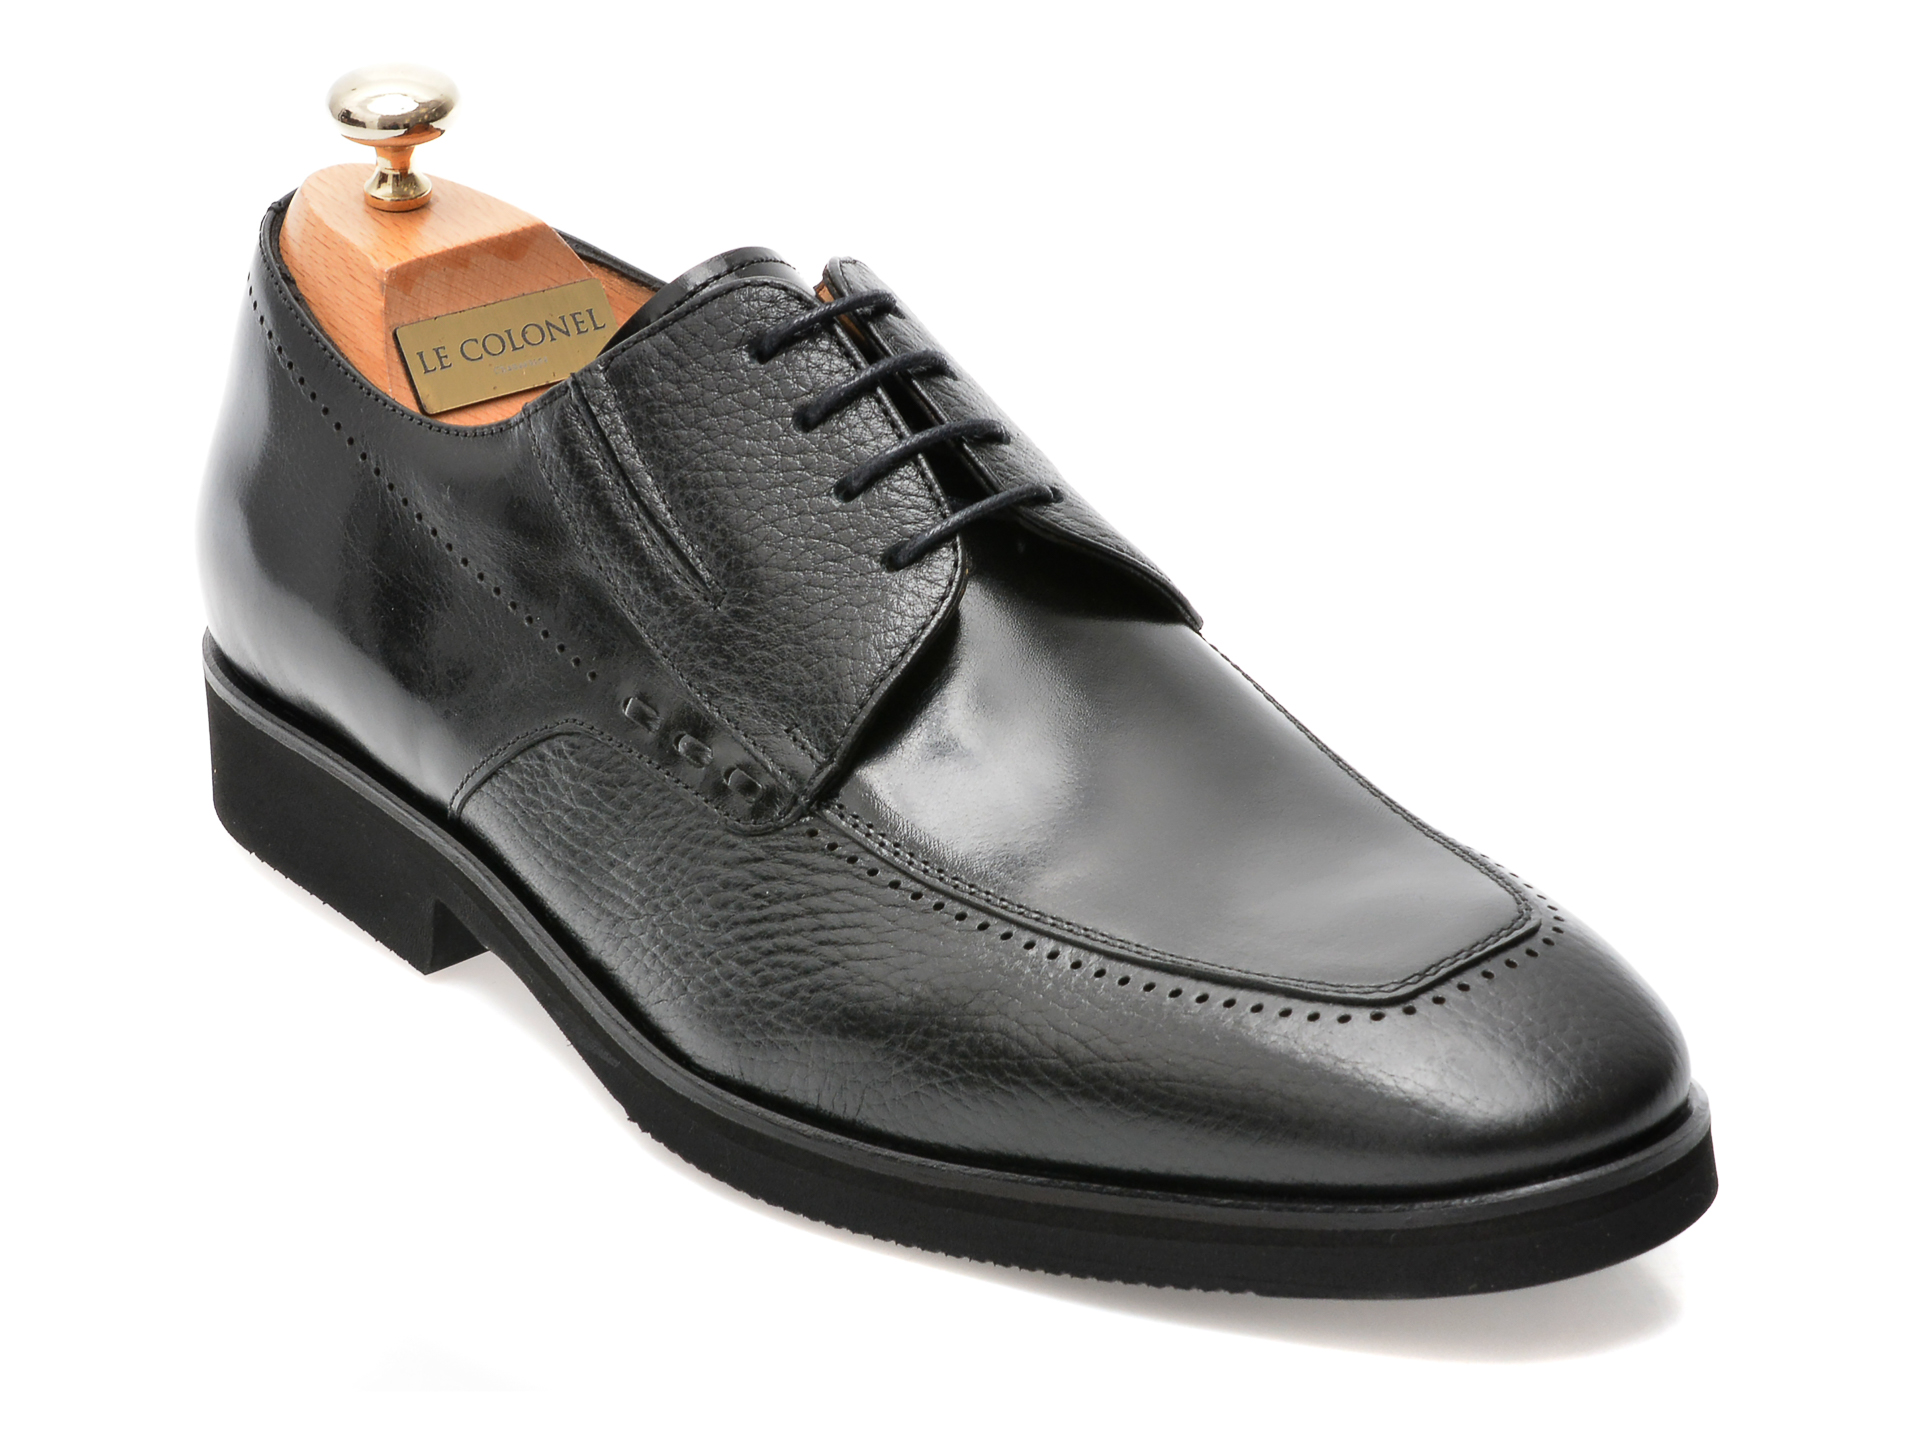 Pantofi LE COLONEL negri, 48701, din piele naturala Incaltaminte Barbati 2023-09-27